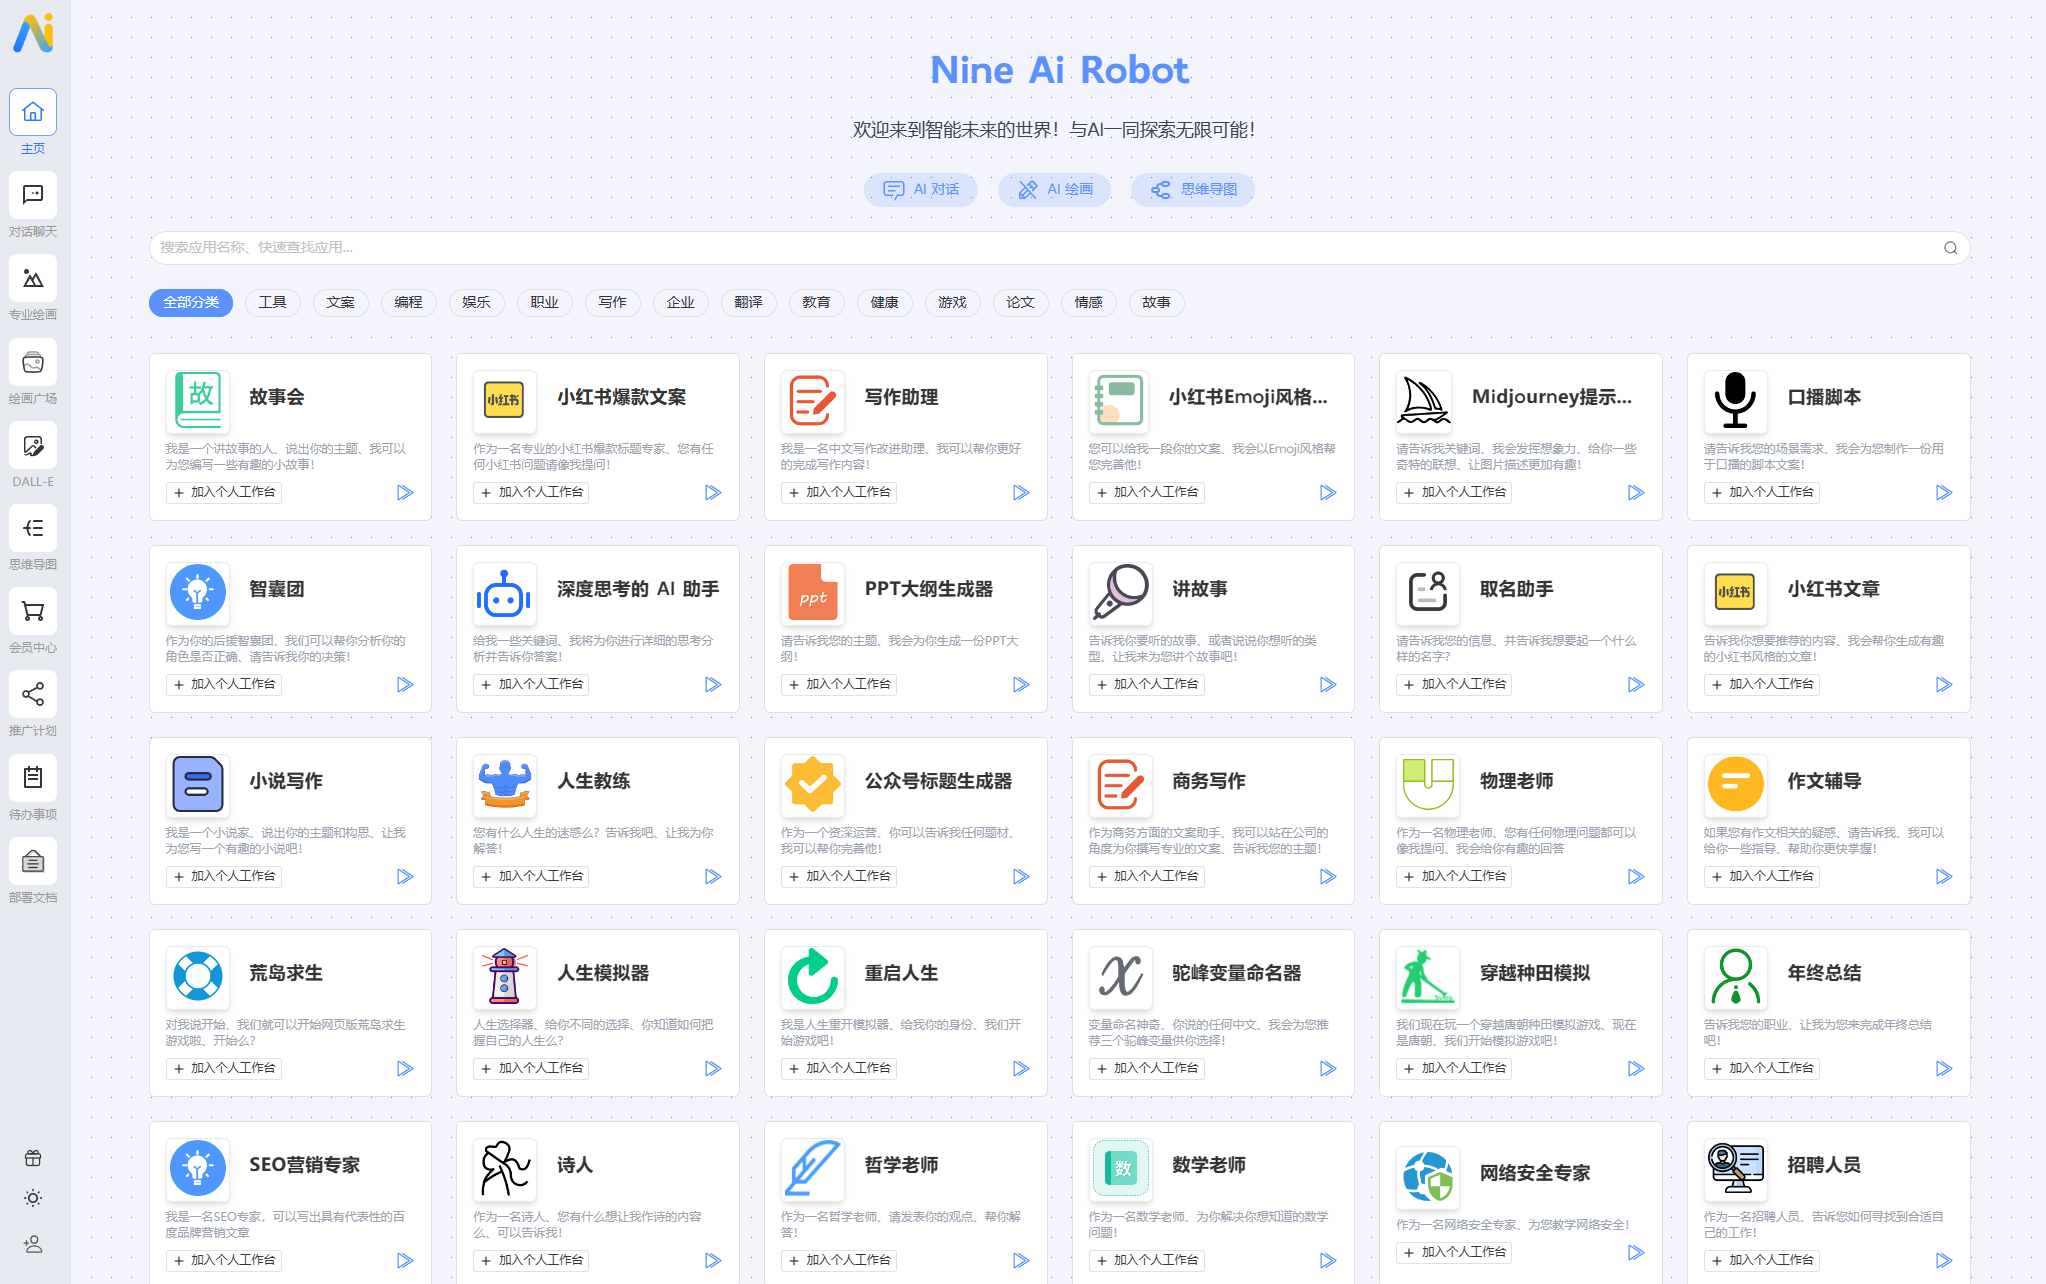 NineAi 新版AI系统网站源码 ChatGPT-墨觉文屋